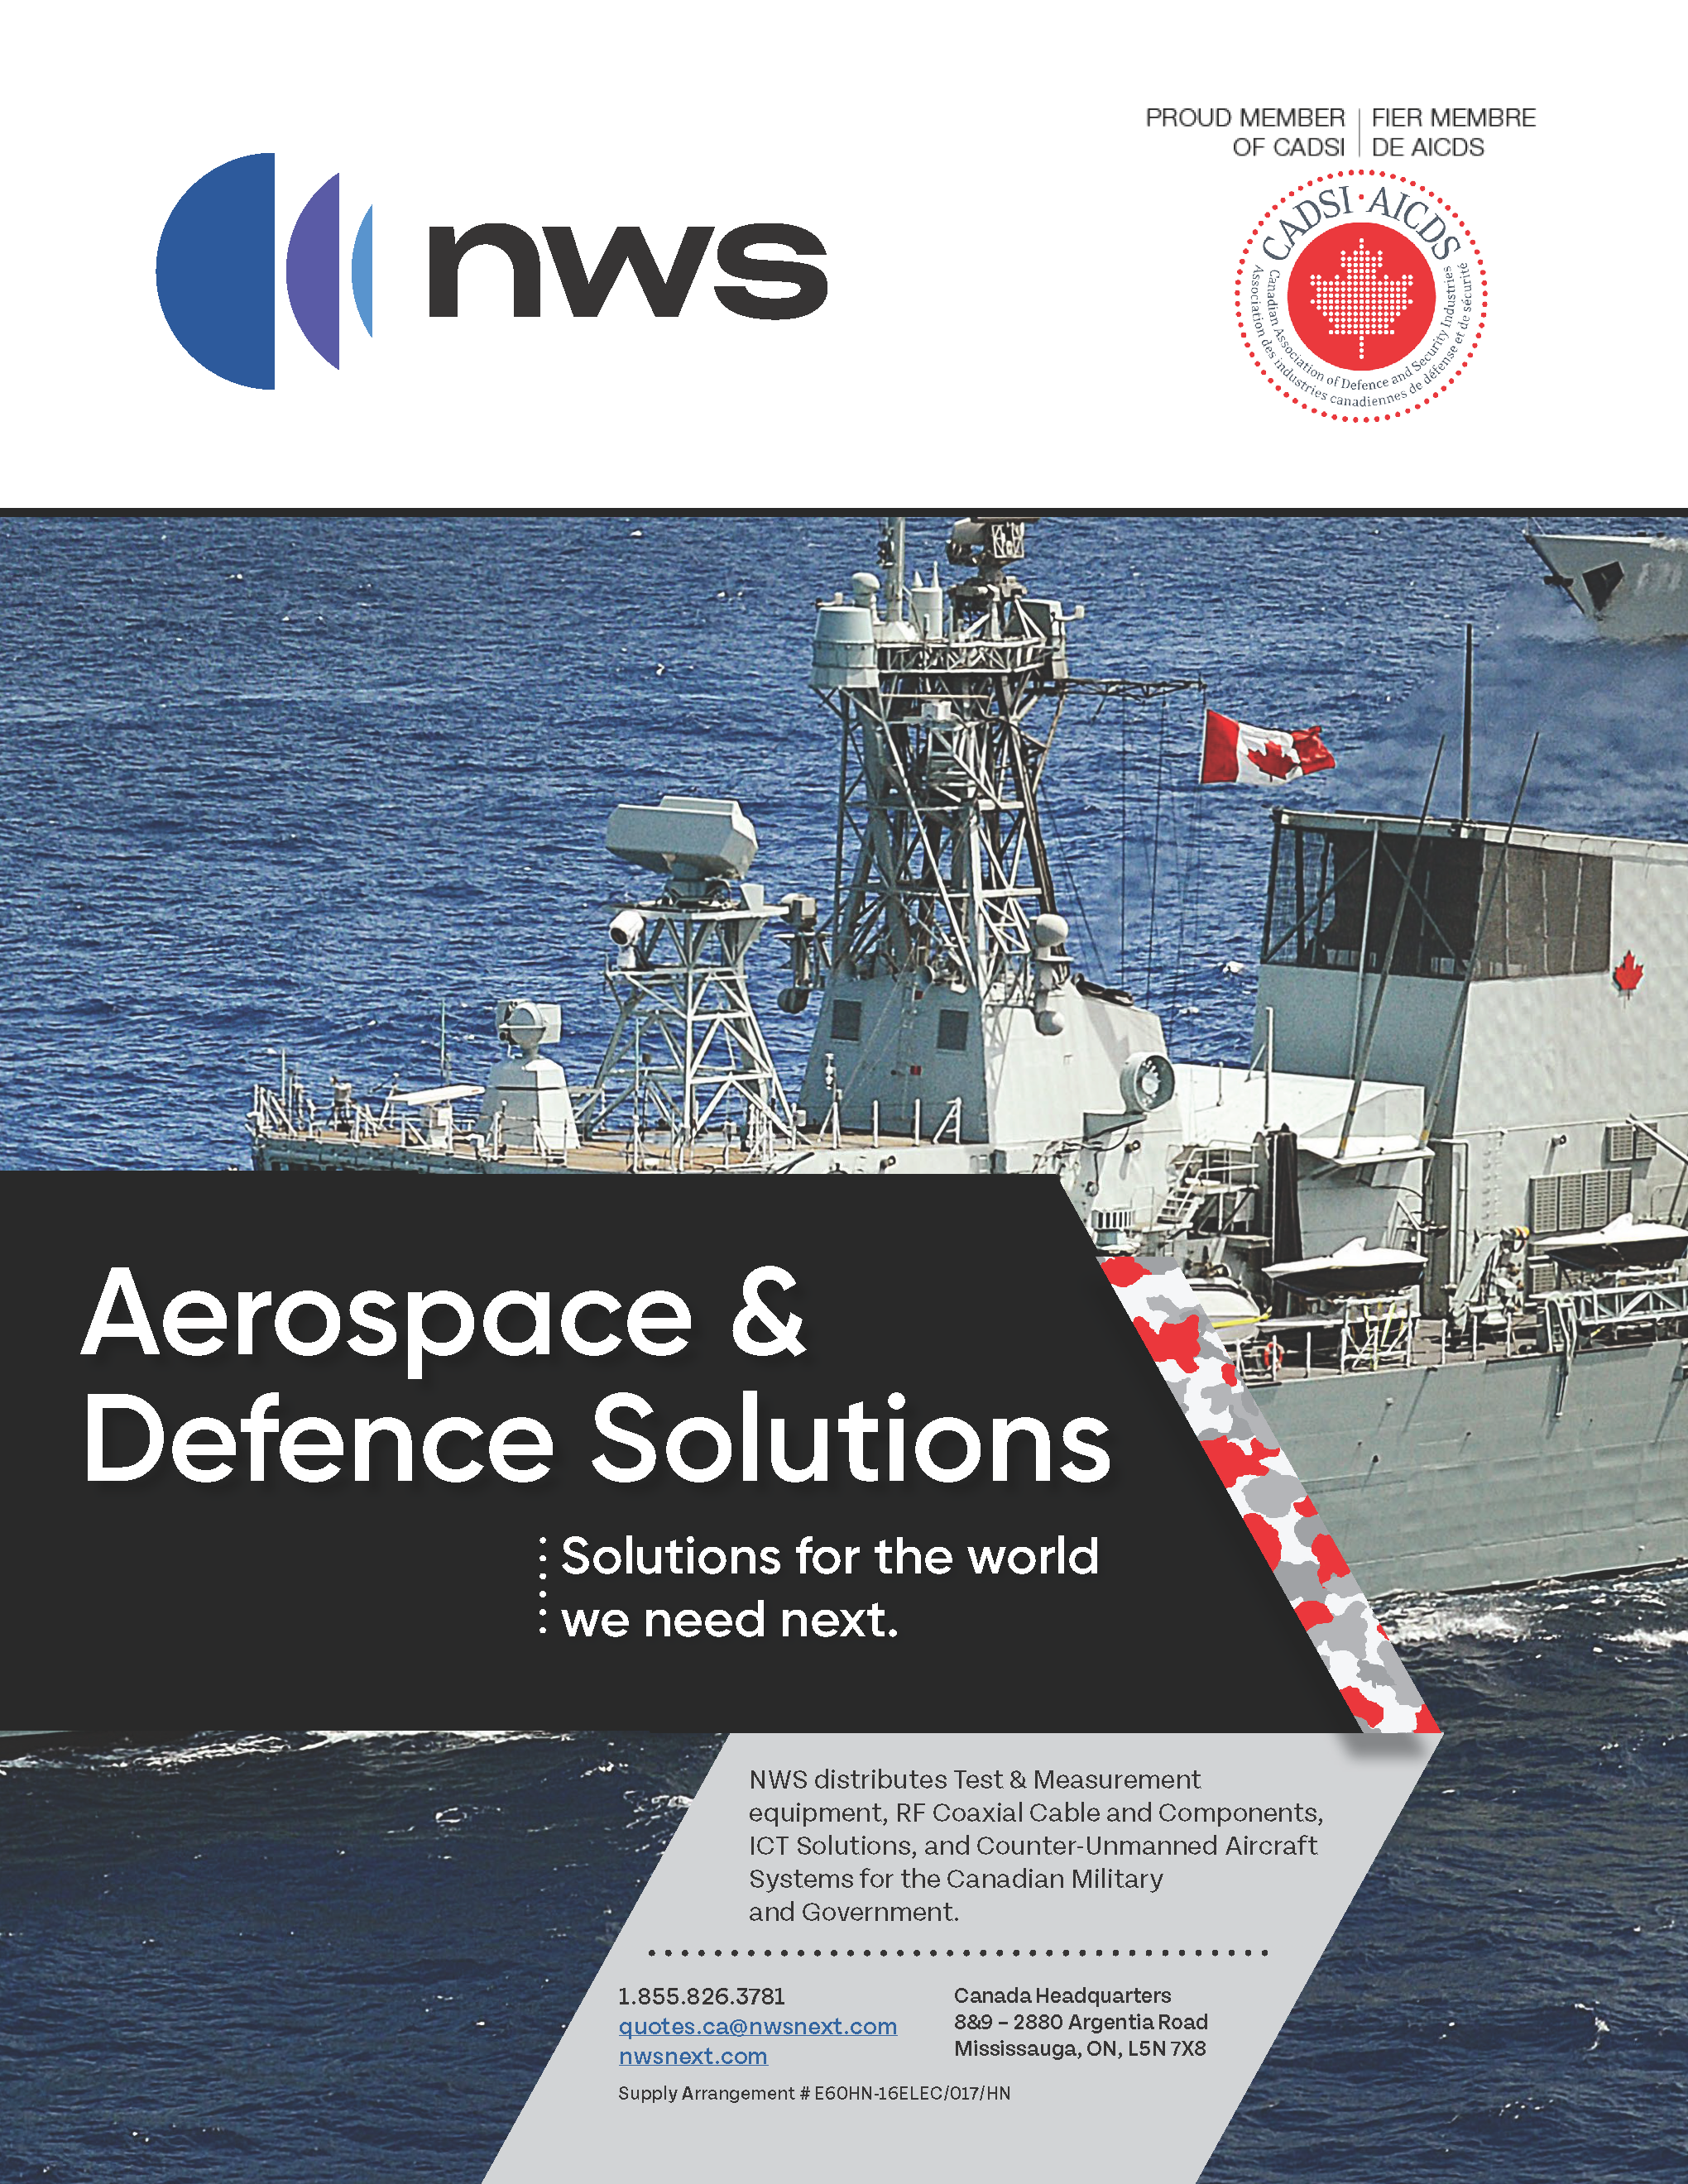 Couverture de la brochure militaire NWS Aerospace & Defense